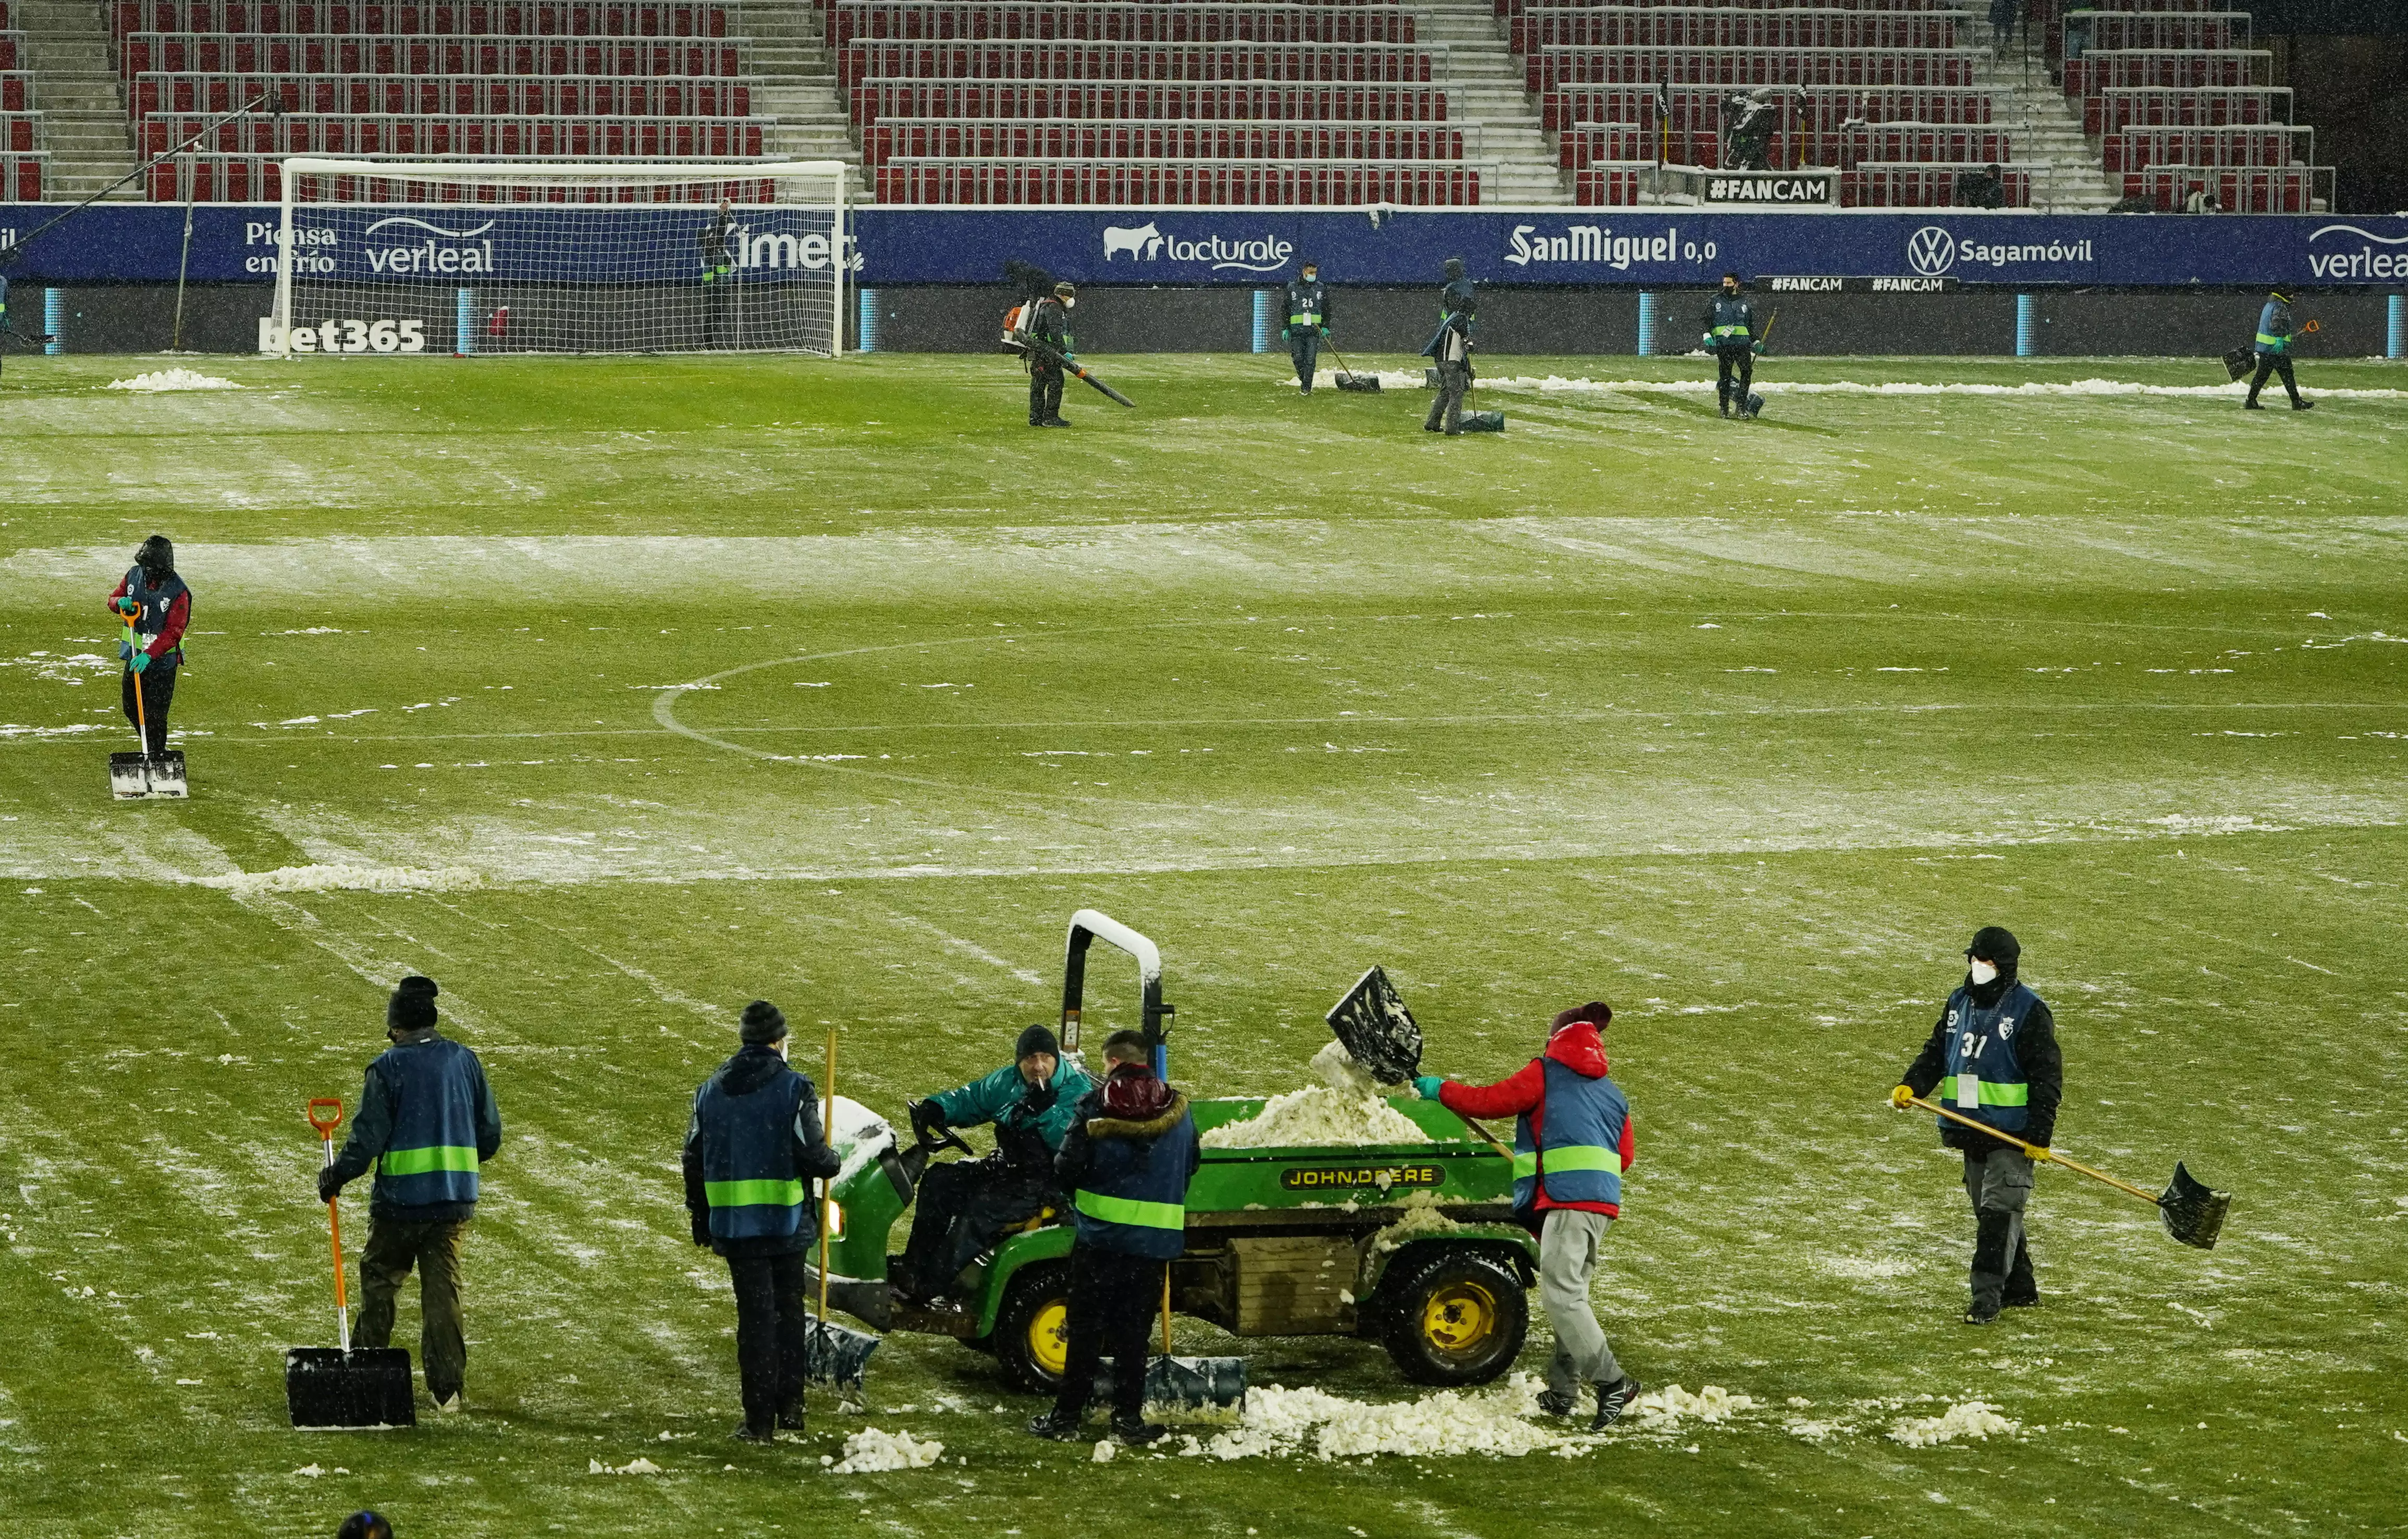 Працівники стадіону "Осасуни" розчищали поле перед матчем з "Реалом"